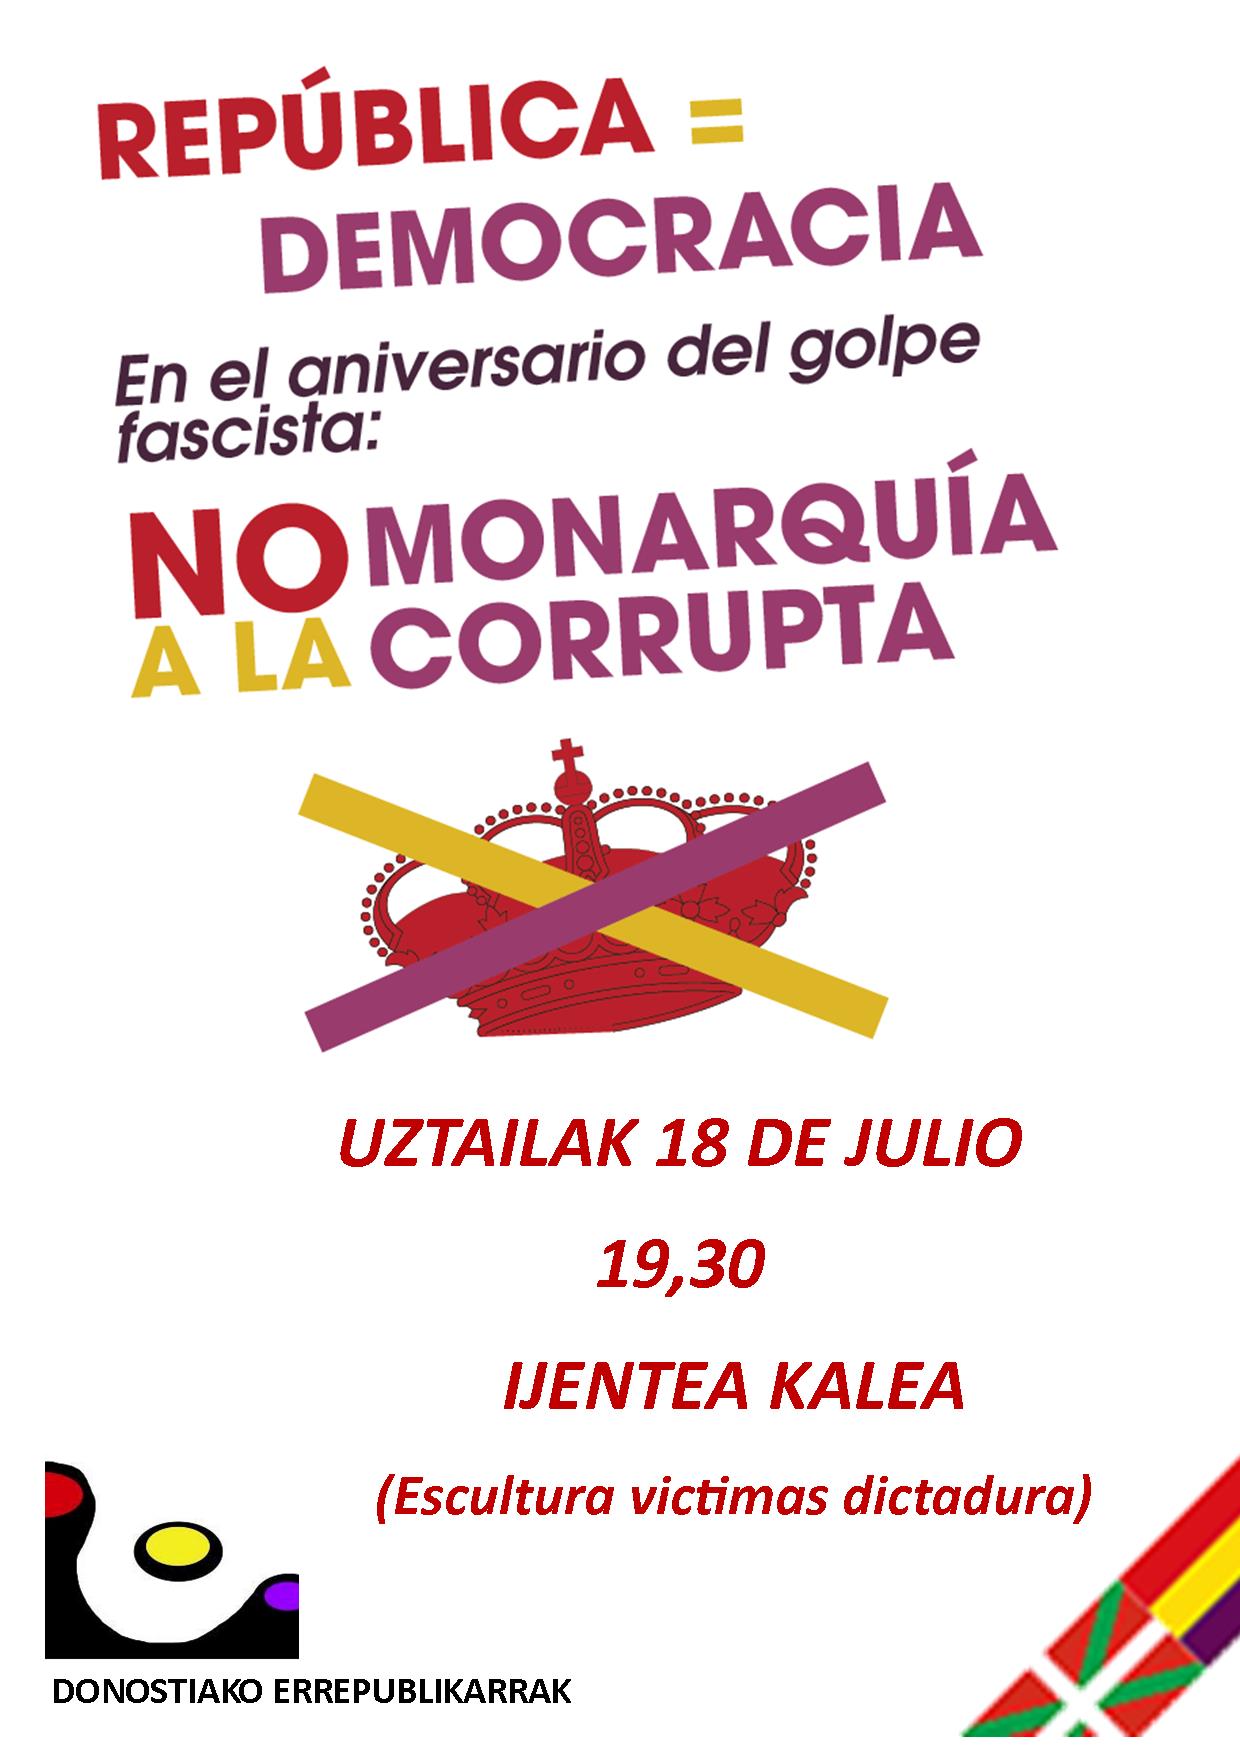 Democracia es República, no a la monarquía corrupta. Concentración  en Donostia,18 de Julio.